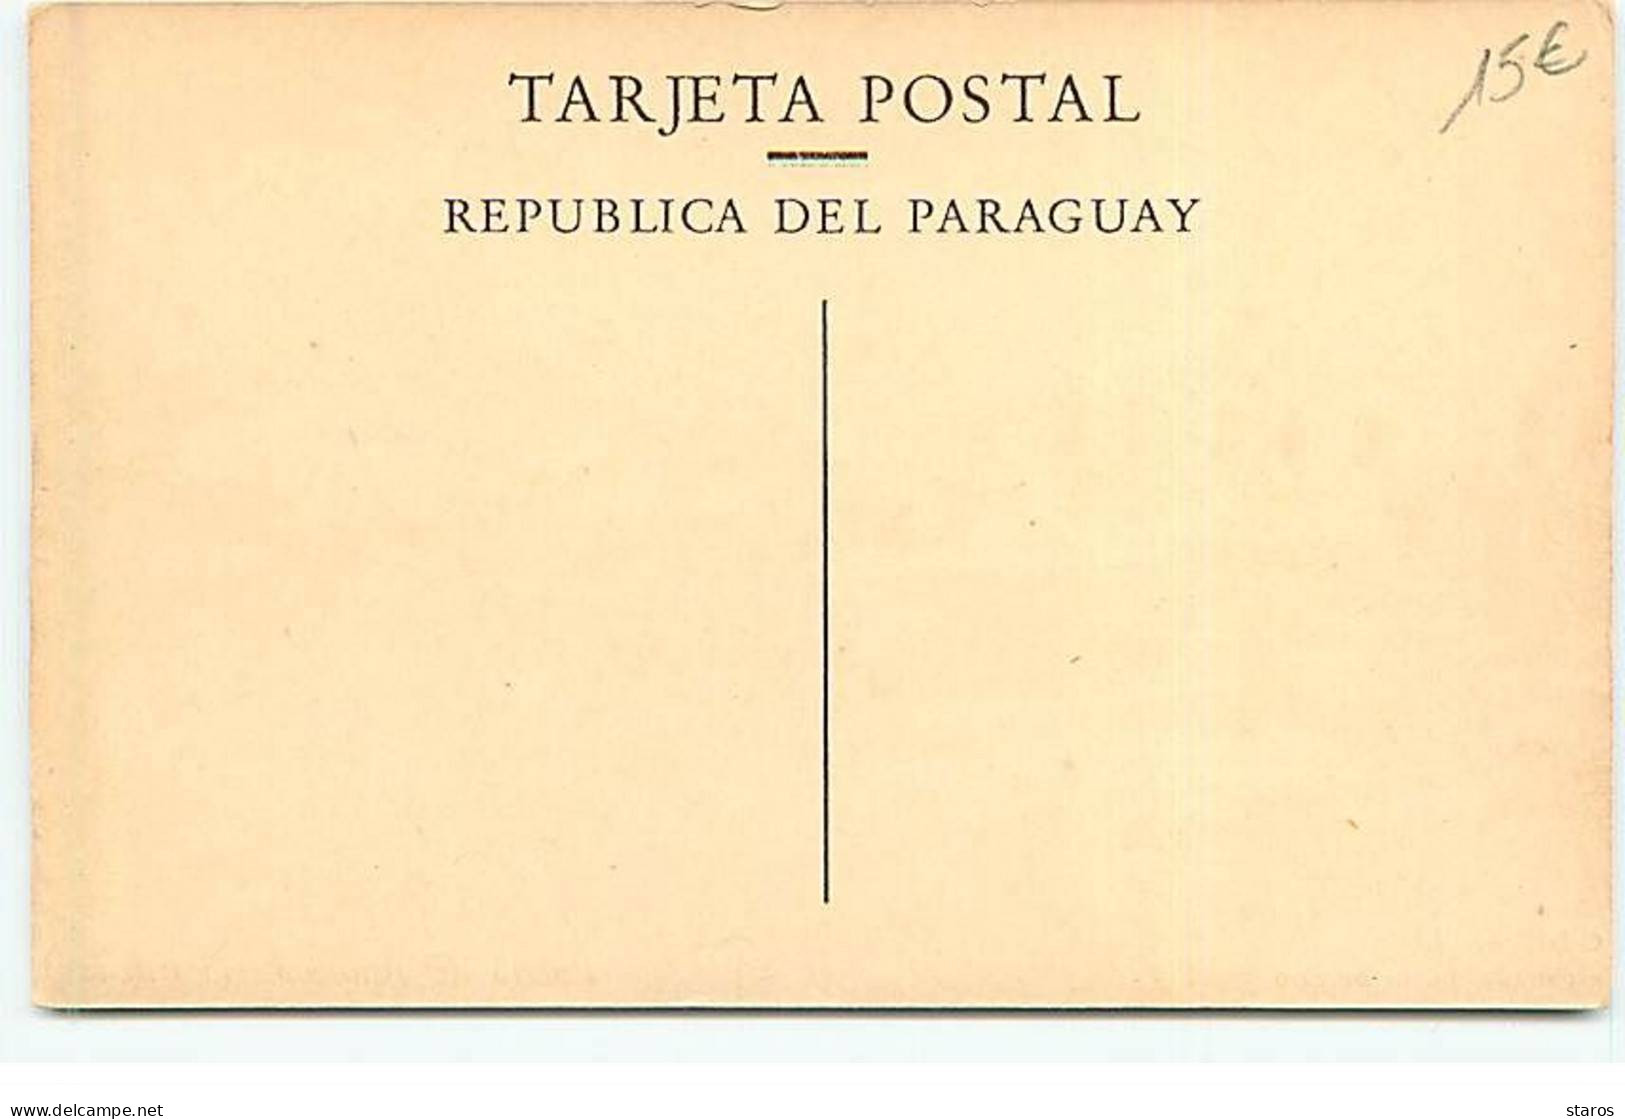 PARAGUAY - Puerto De Asuncion - Bateaux, Dont Un à Roue - Paraguay